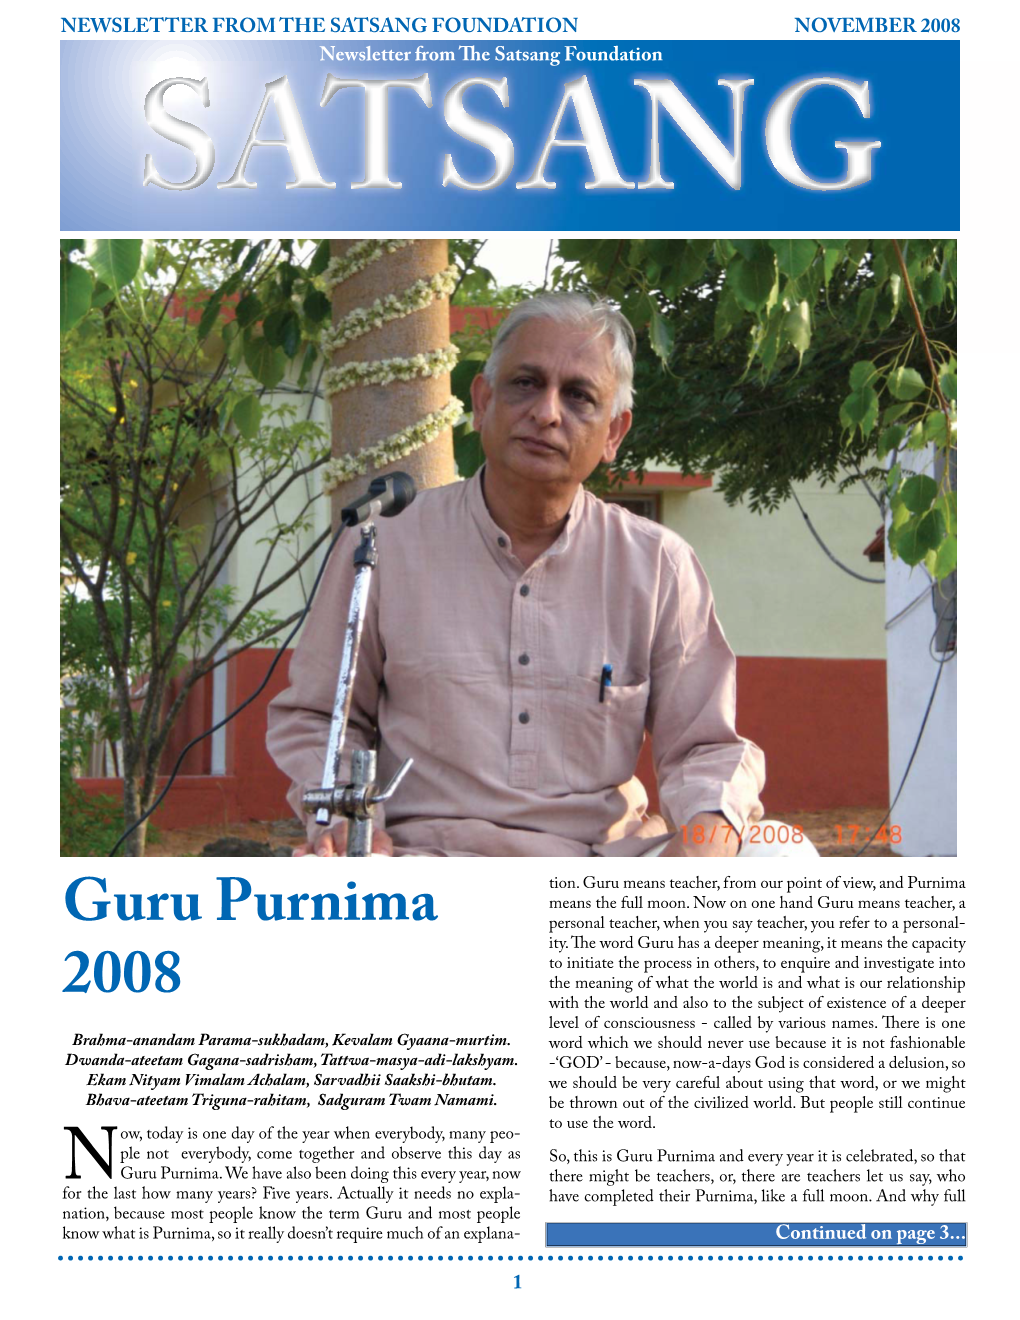 Guru Purnima 2008 Transcript of Sri M’S Talk on the Guru Purnima Day in 2008